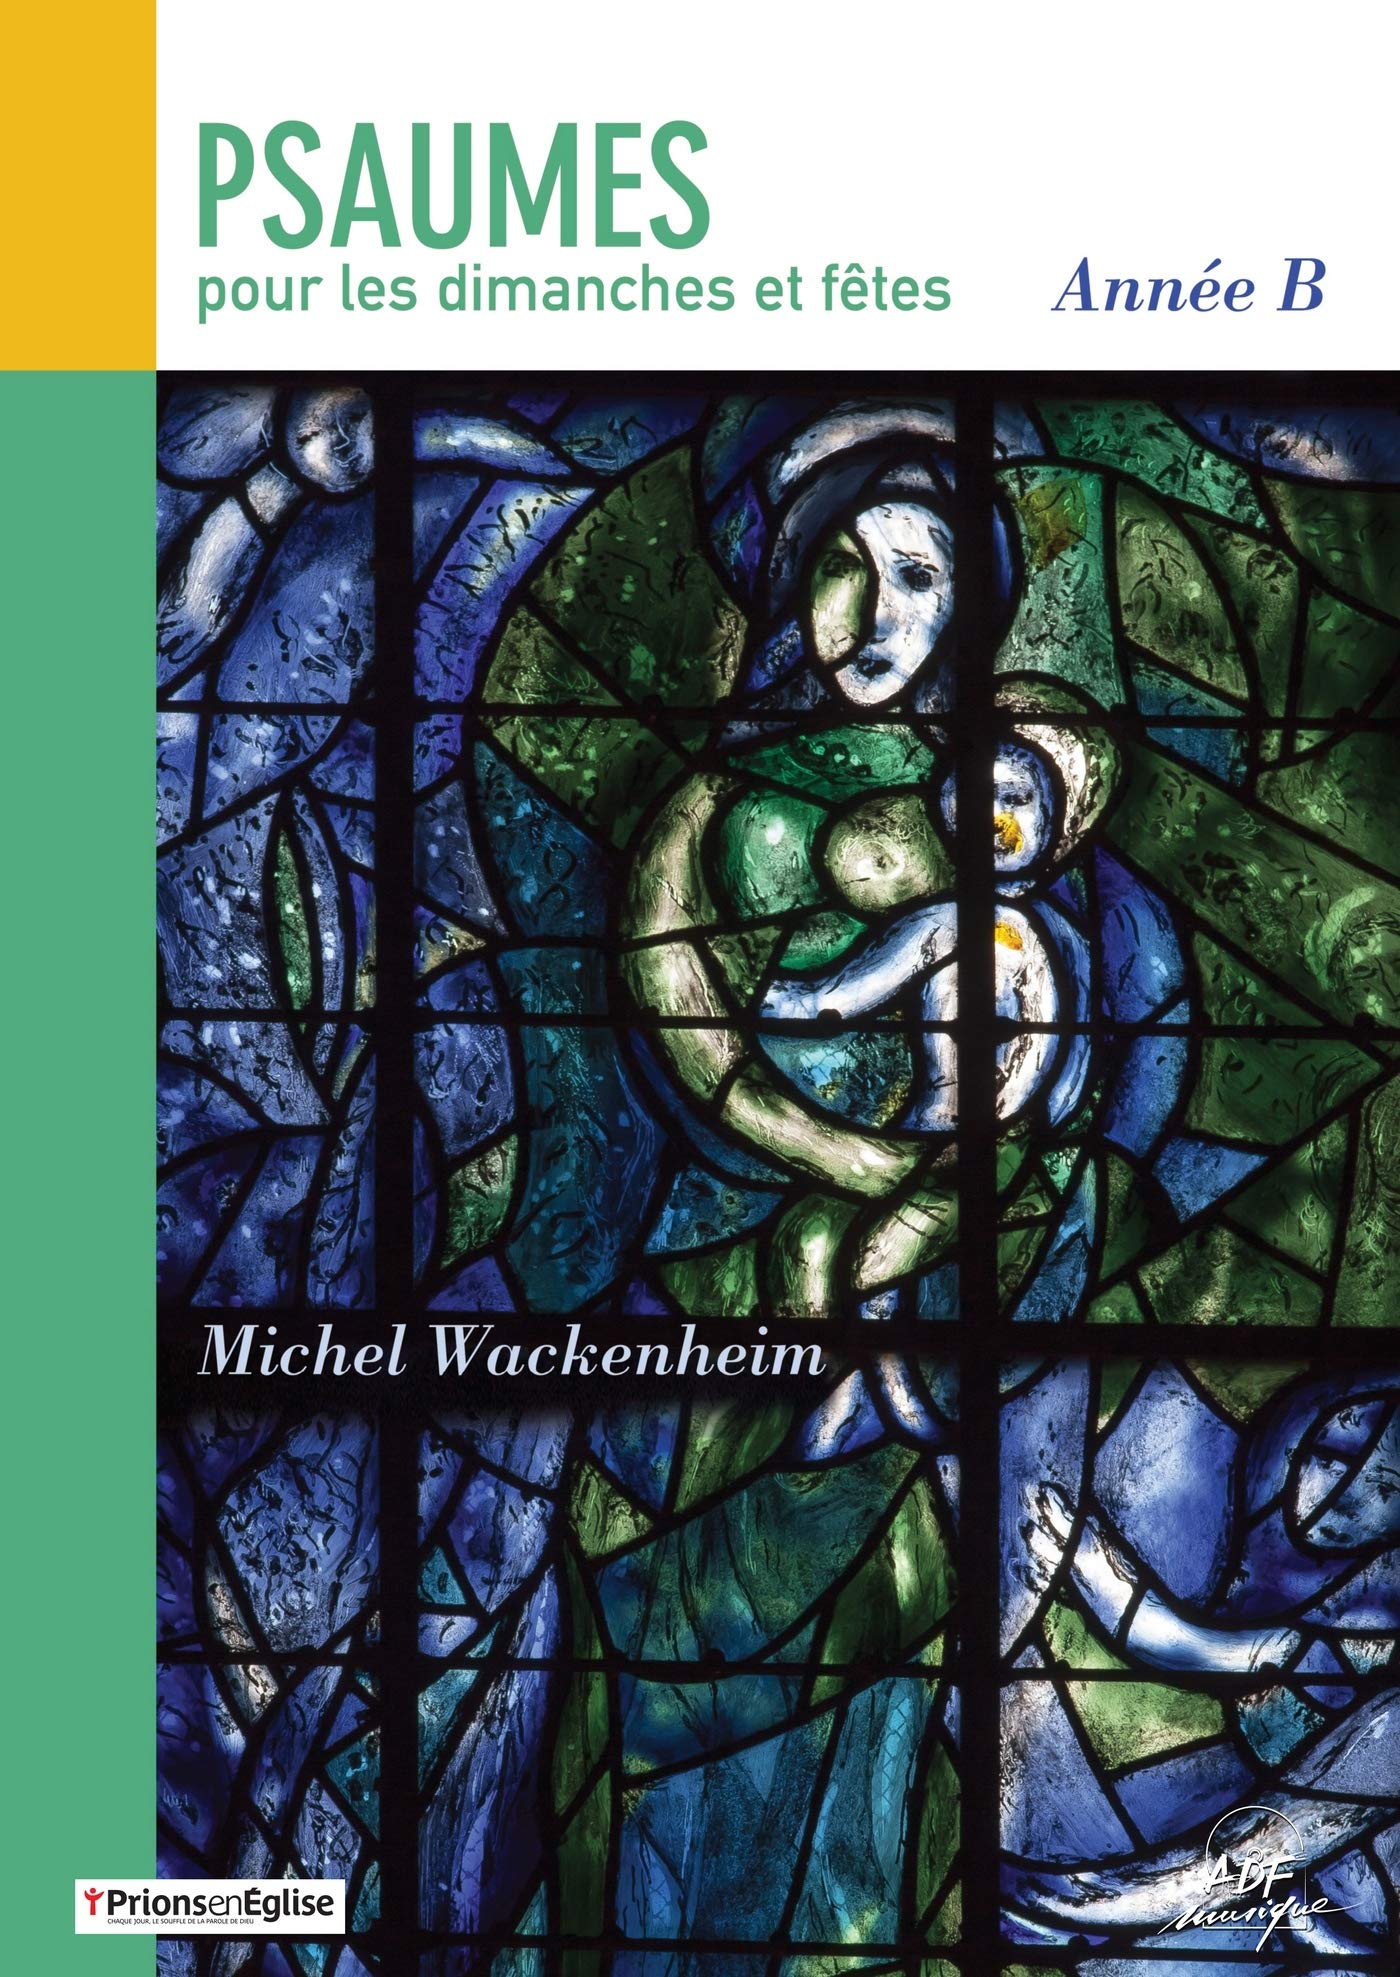 Libri Michel Wackenheim - Psaumes Pour Les Dimanches Et Fetes : Annee B NUOVO SIGILLATO, EDIZIONE DEL 09/11/2017 SUBITO DISPONIBILE